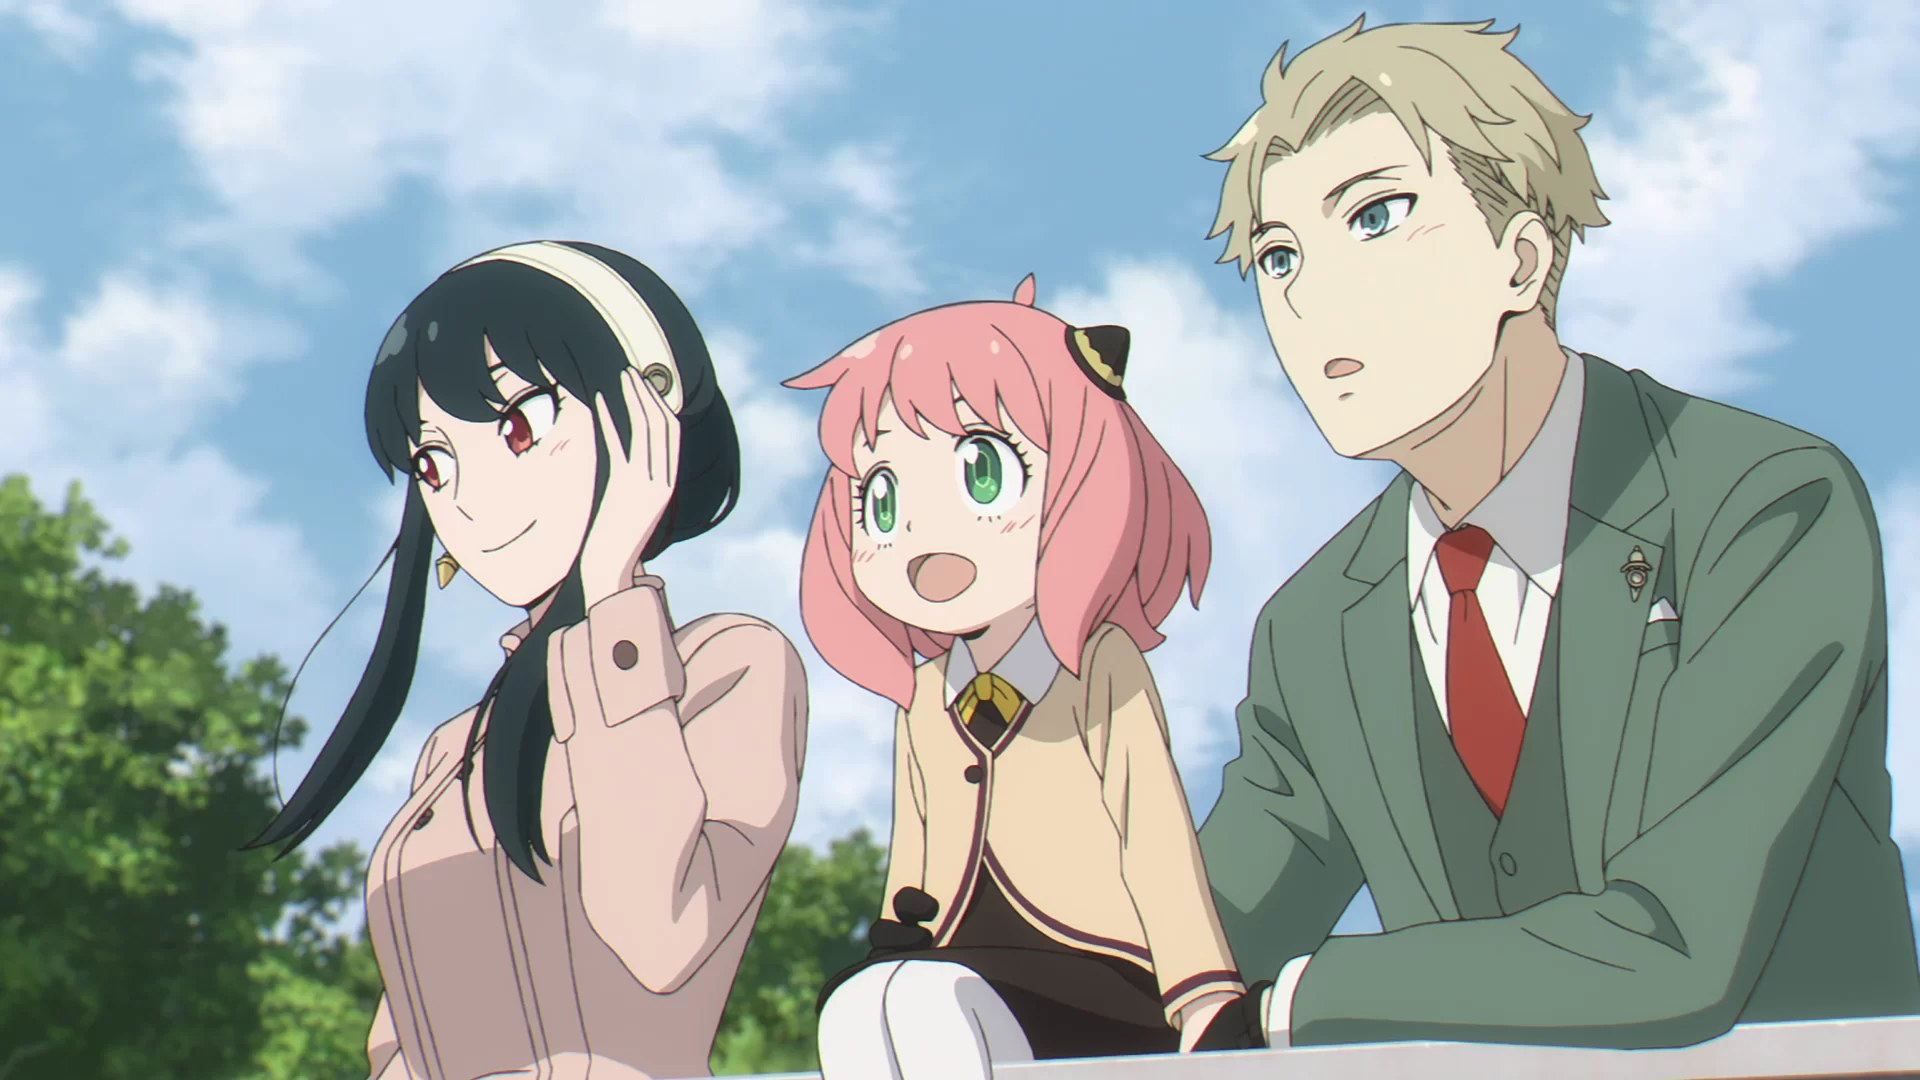 Minaturka 3 odcinka anime SPY x FAMILY